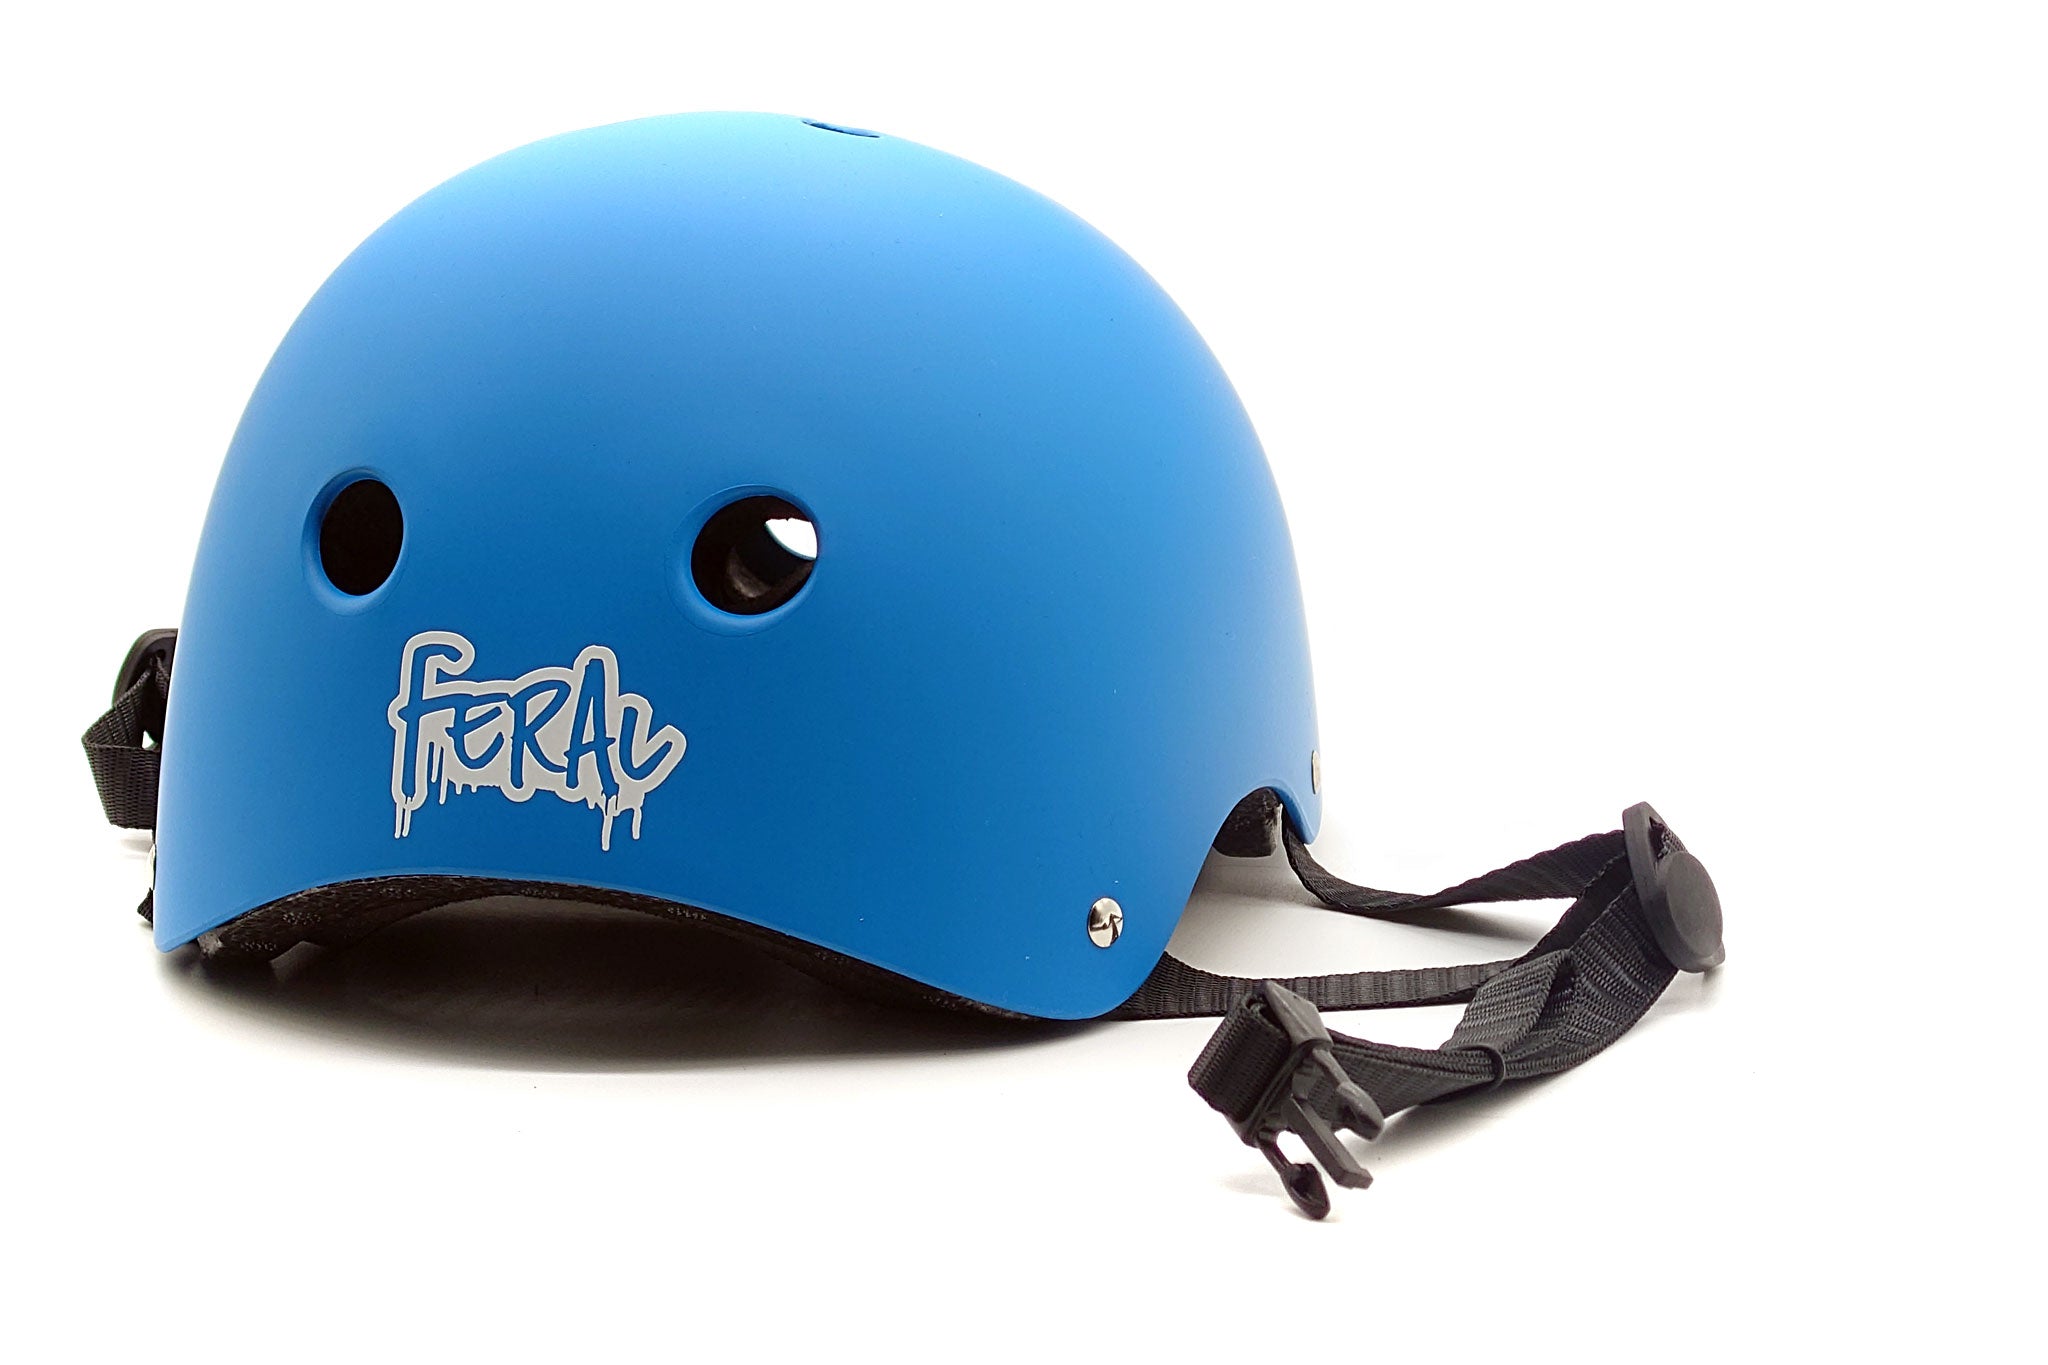 Feral-helmet-rear.jpg